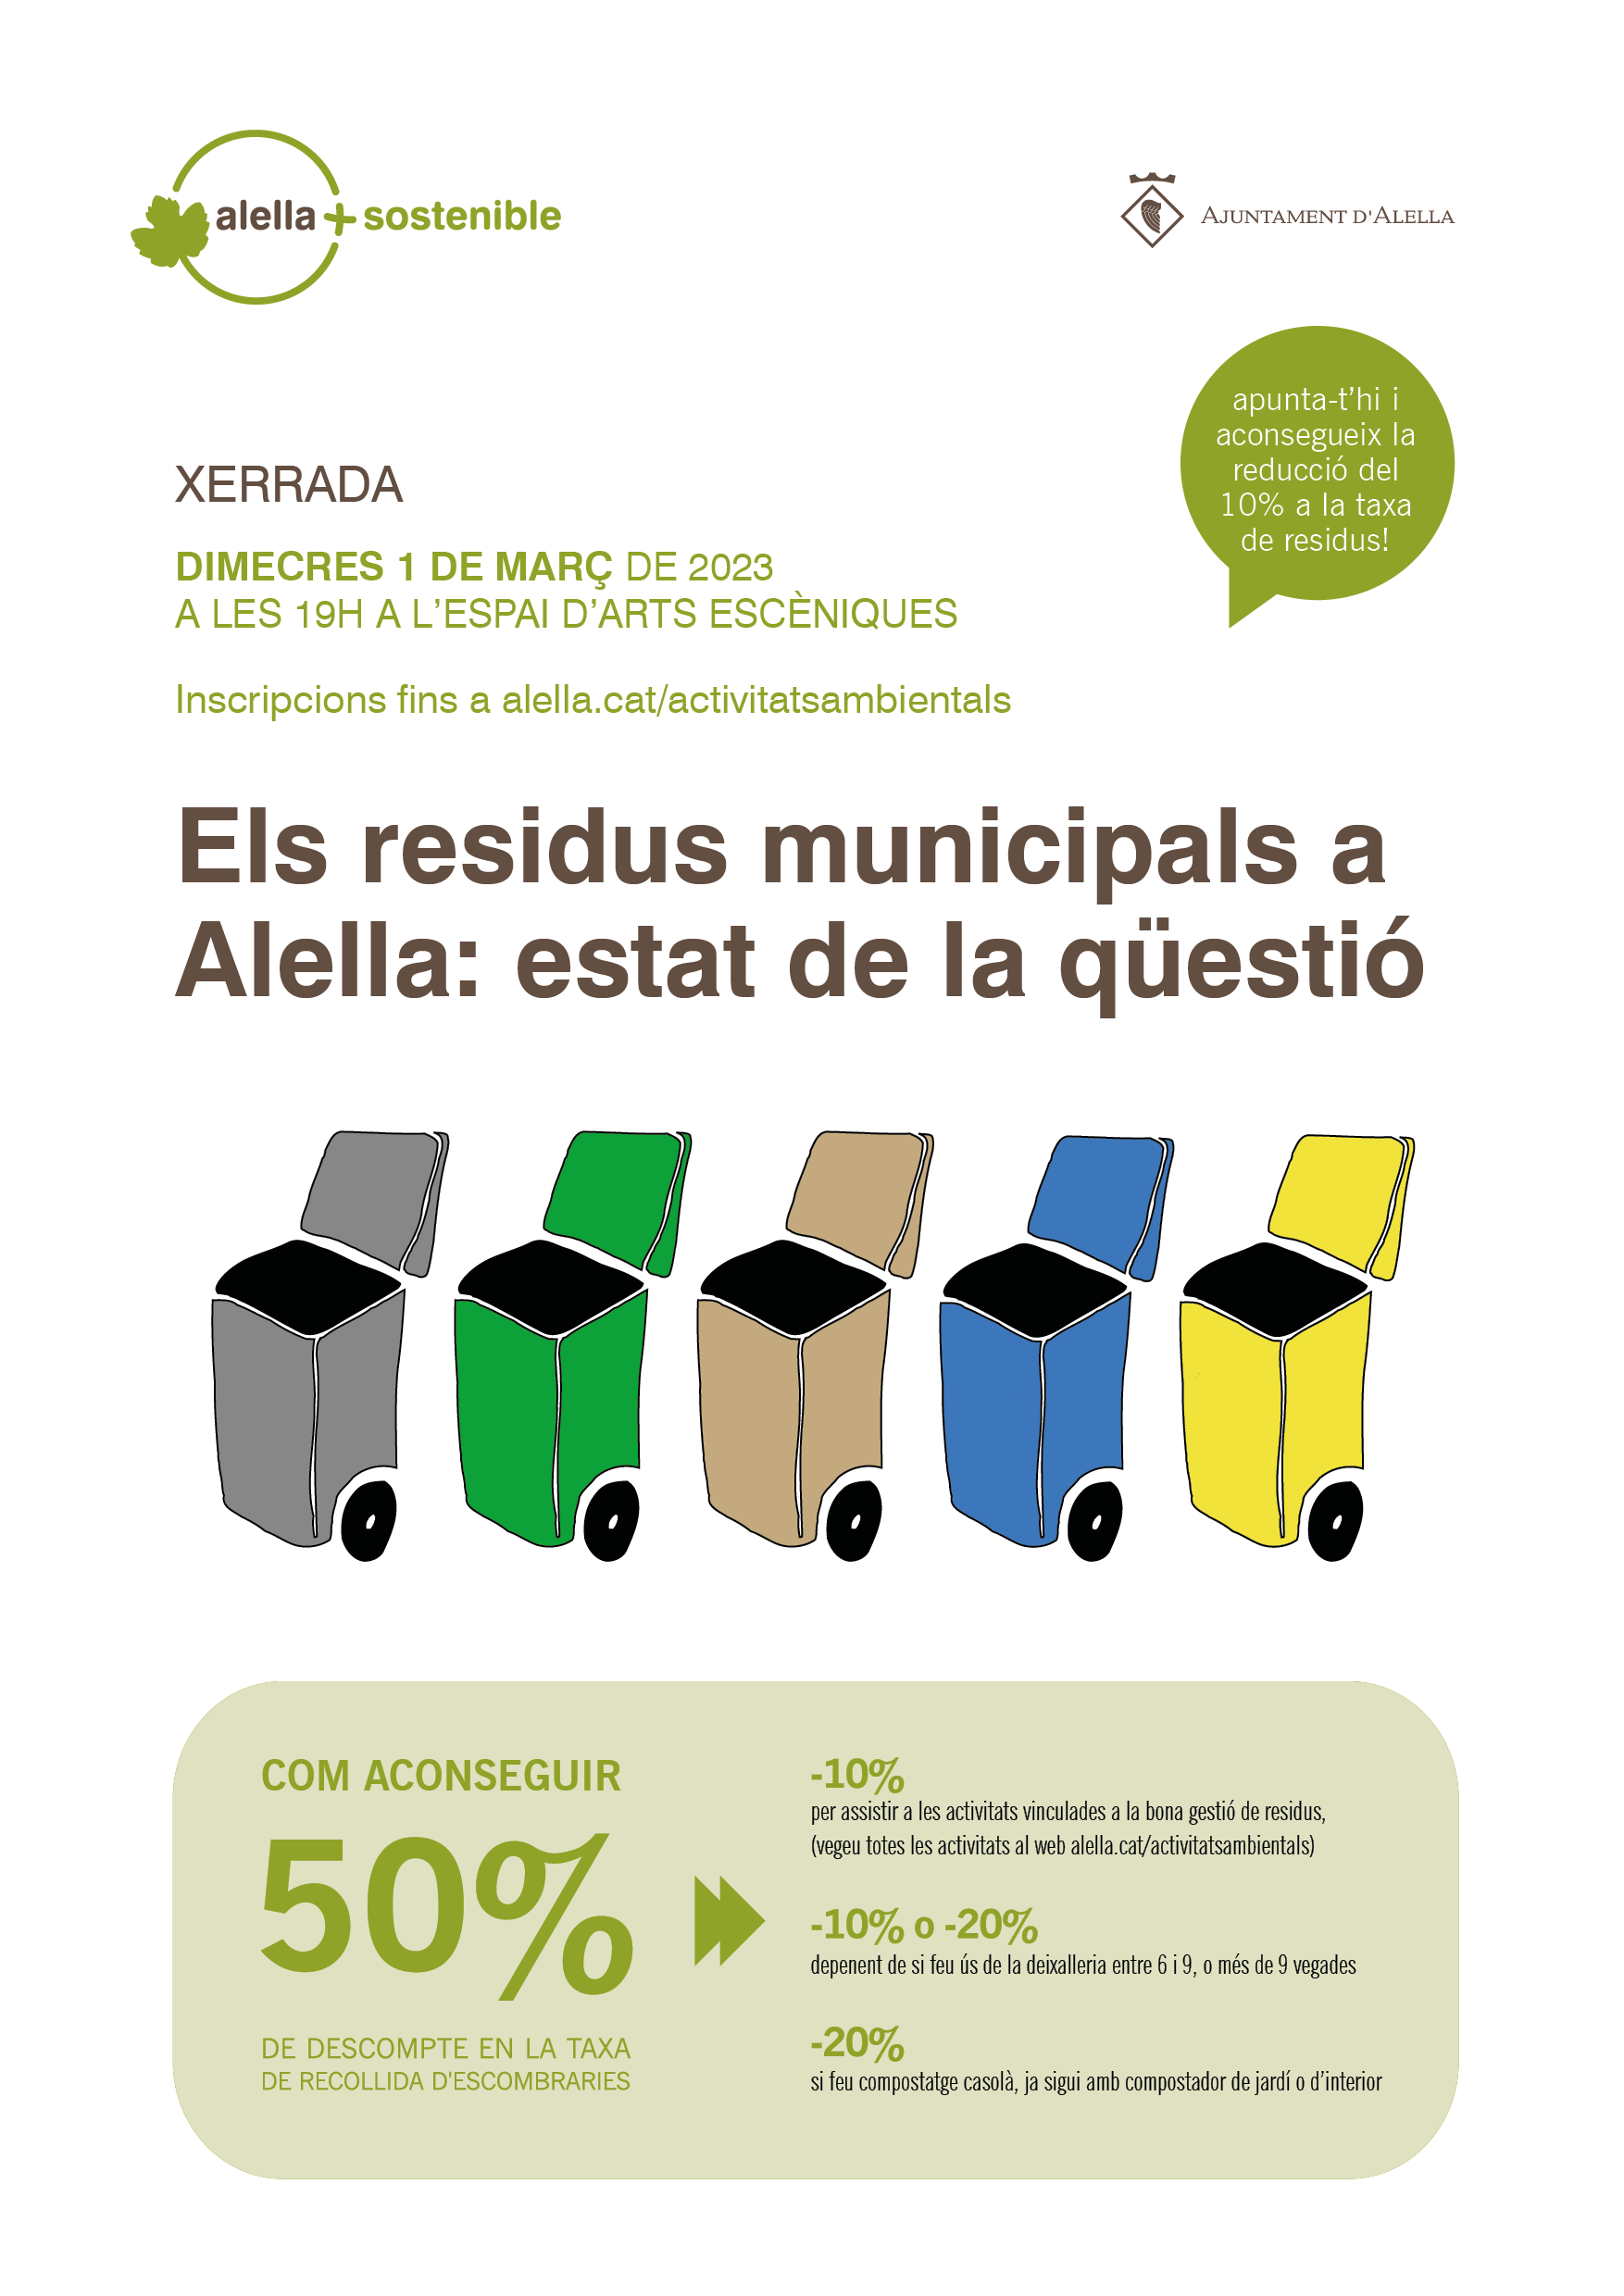 Xerrada "Els residus municipals a Alella: estat de la qüestió"